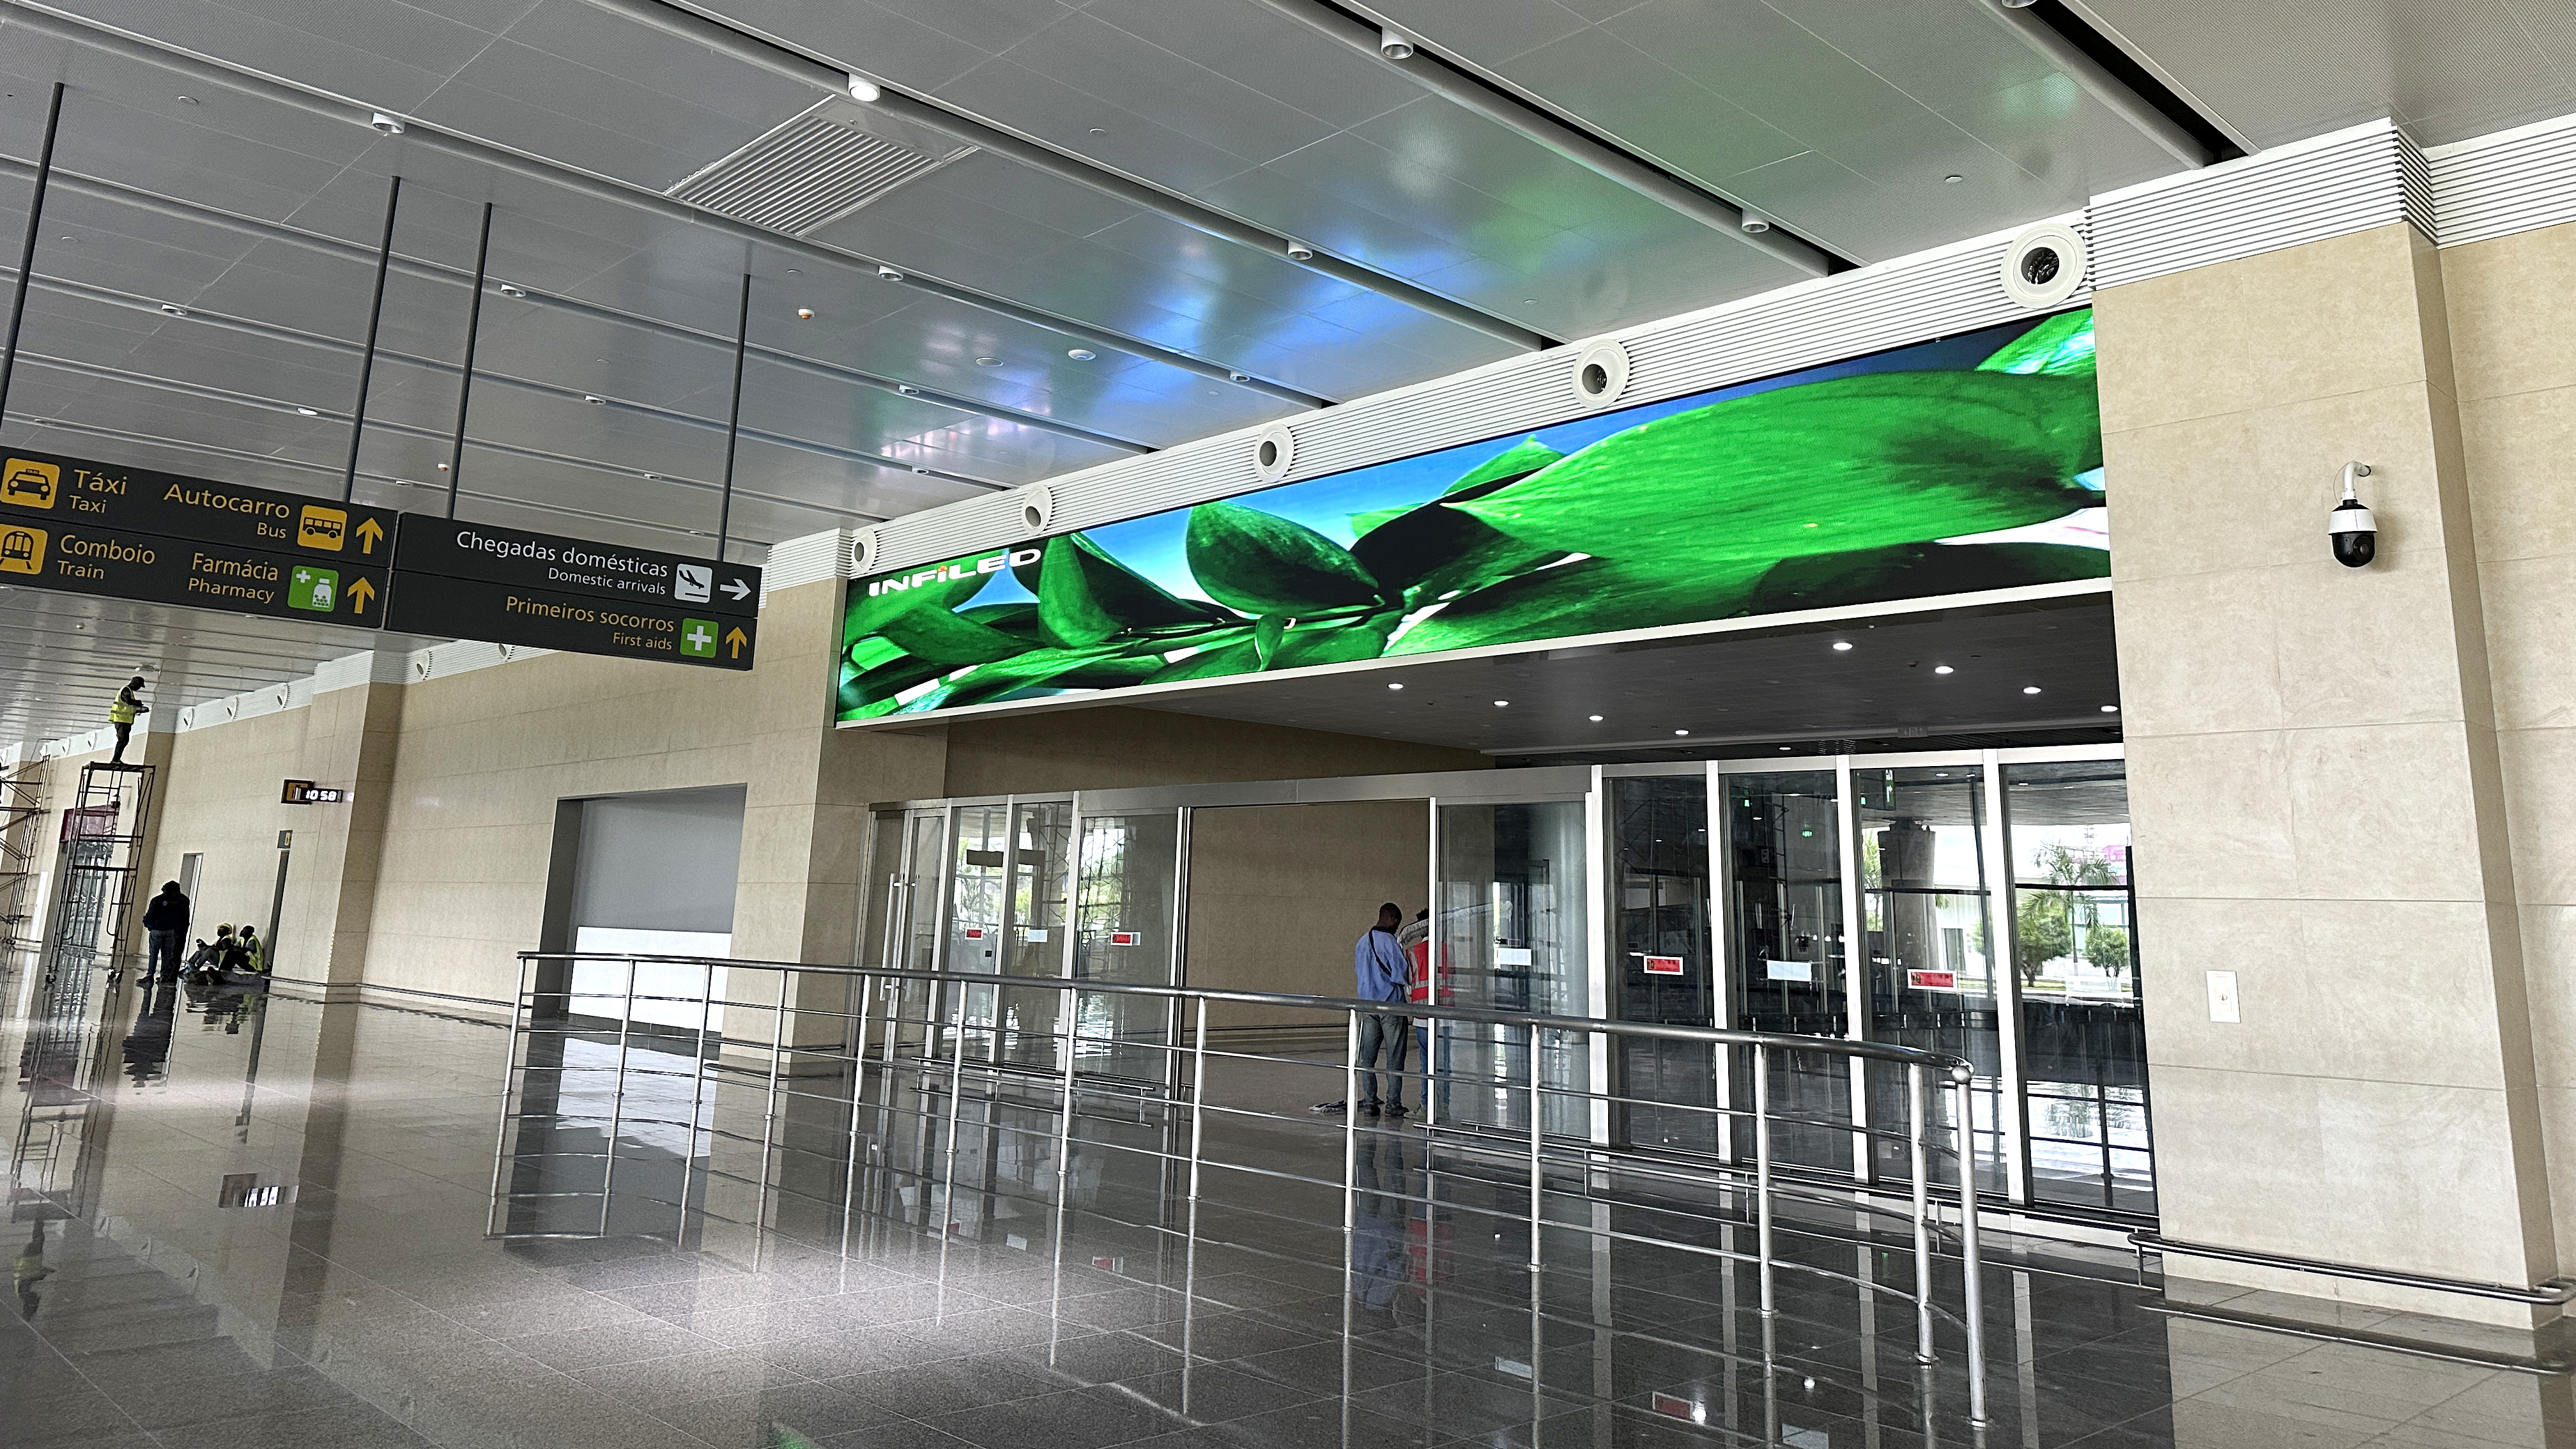 视爵光旭安哥拉内图博士国际机场LED显示屏项目国际抵达的LED显示屏